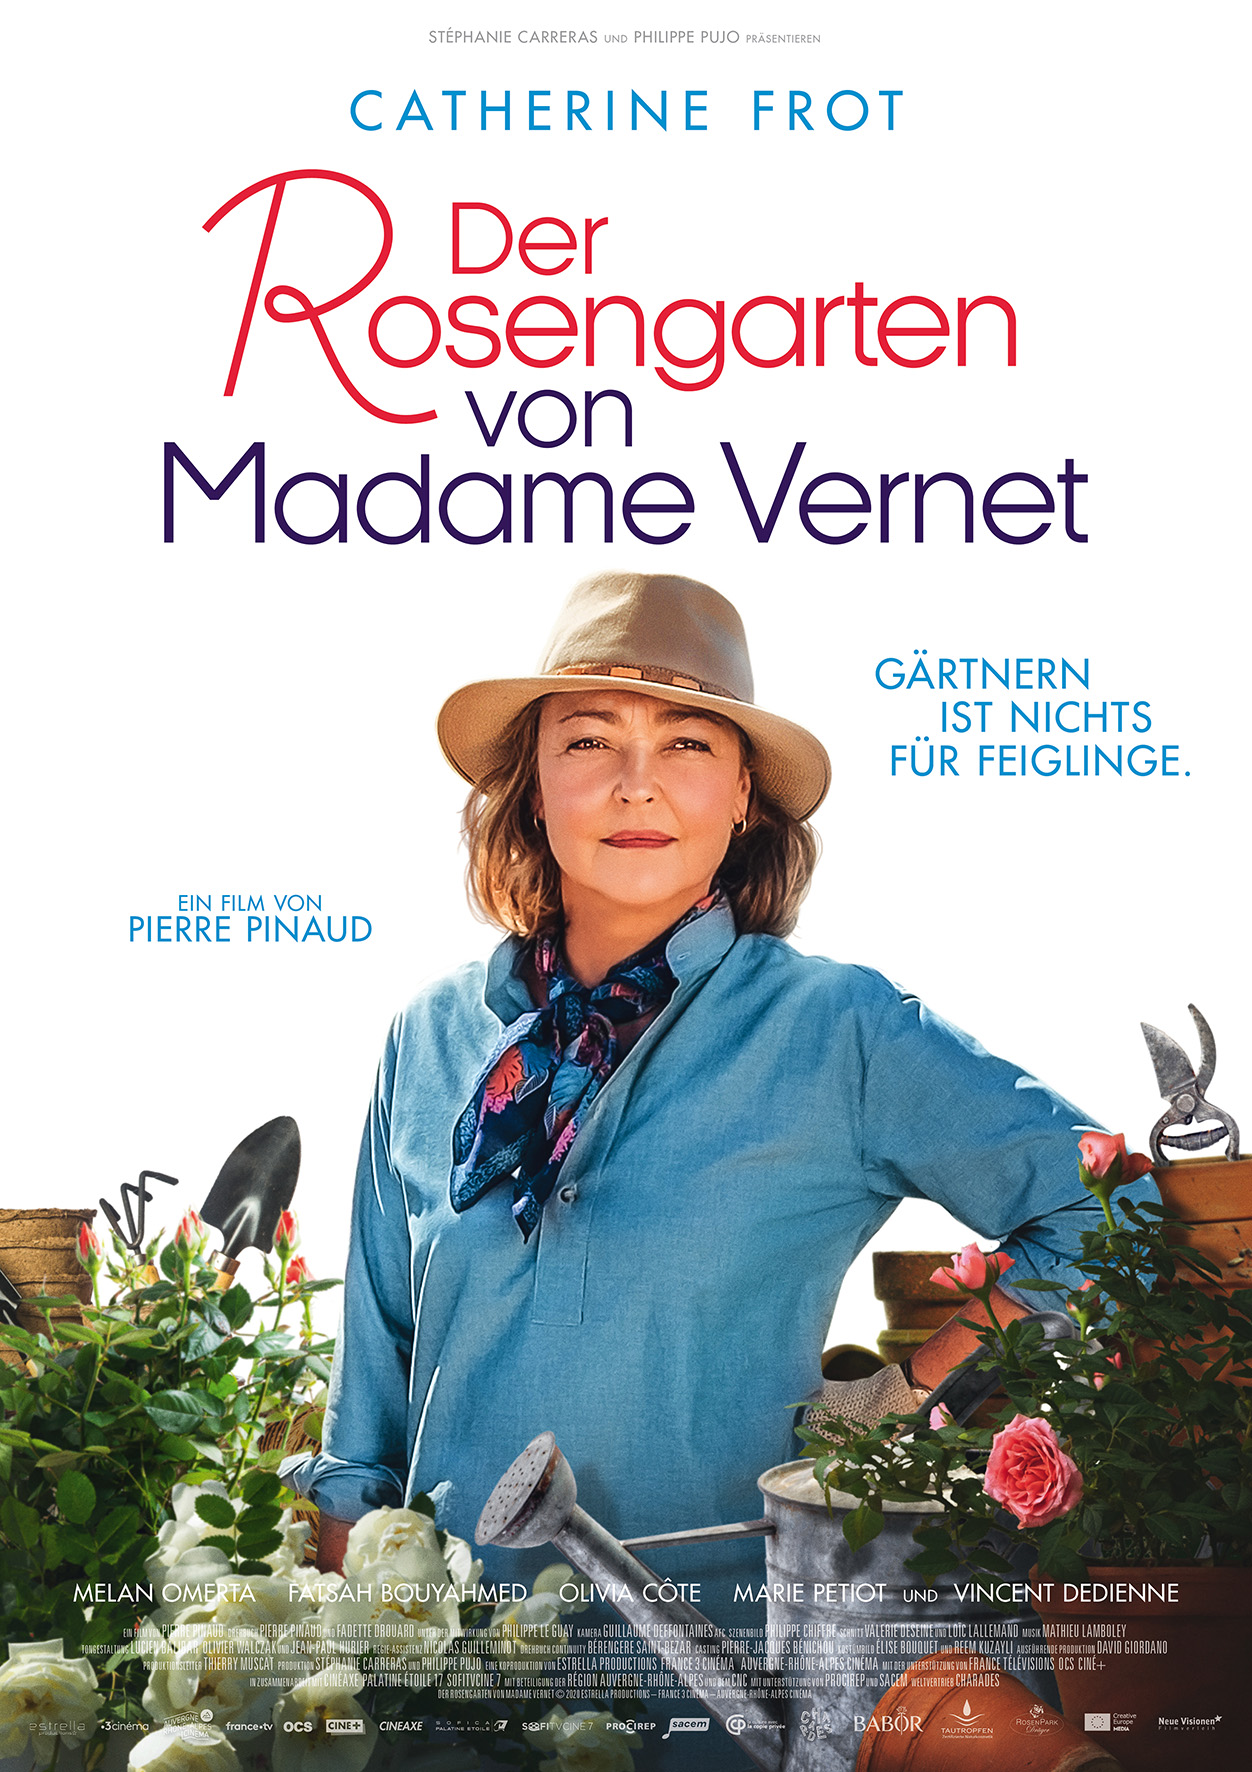 Poster mit Schriftzug Der Rosengarten von Madame Vernet. Schauspielerin Catherine Frot inmmitten von Blumen mit einem Hut auf dem Kopf. Sie trägt ein blaues Hemd und einen leichten Schal um den Hals